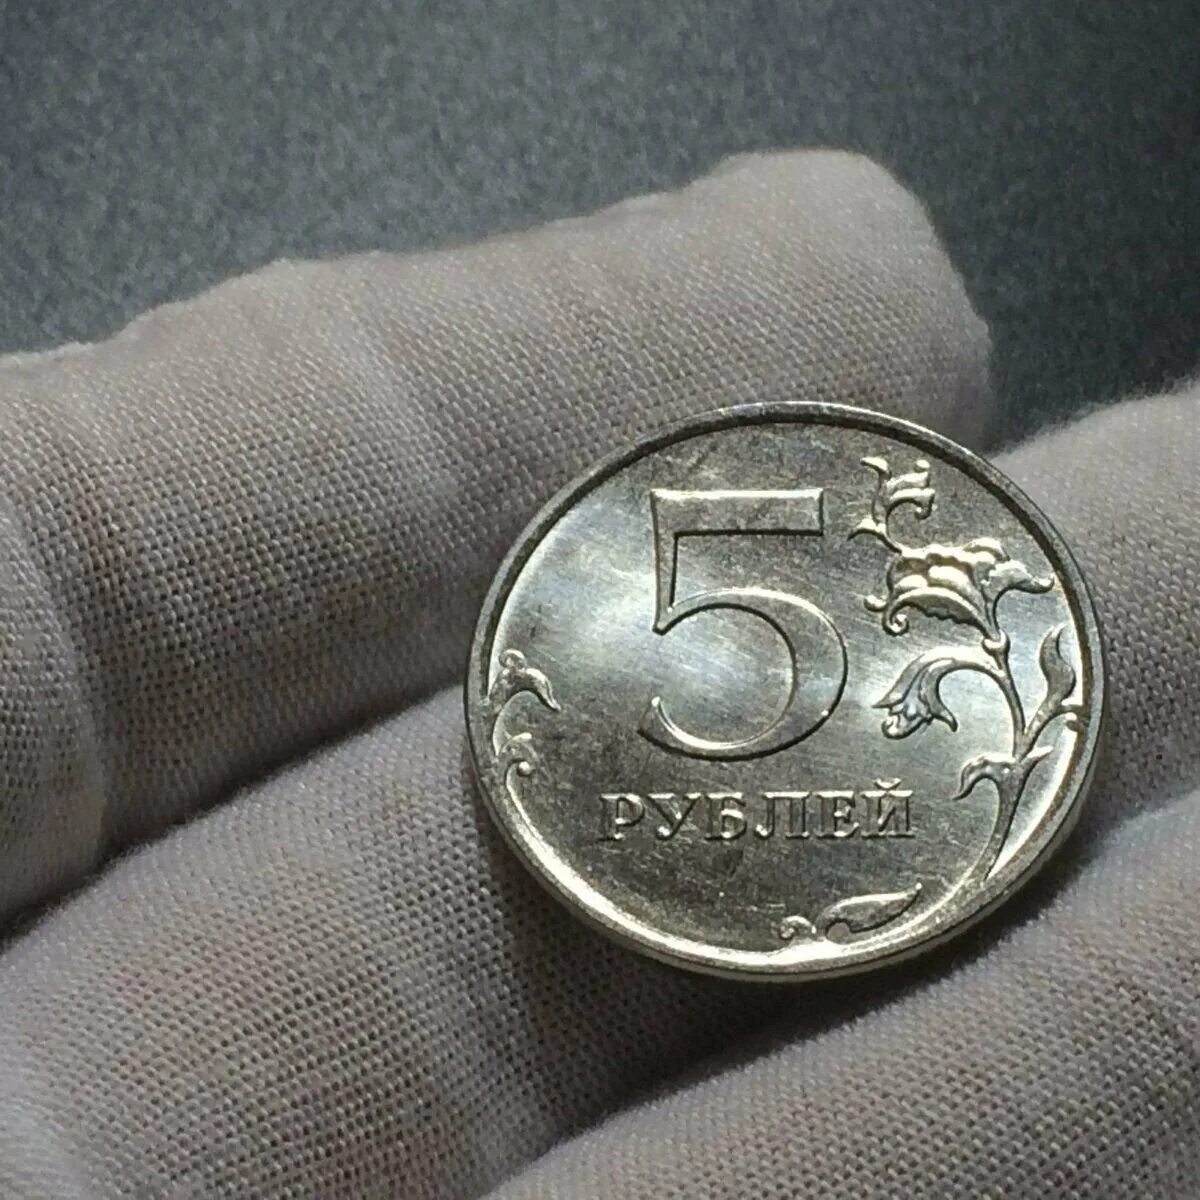 5 Рублей 1998 года СПМД штемпель 2.4. Бракованные монеты 5 рублей 1998 года. Монеты с браком. Бракованные монеты 5 рублей.